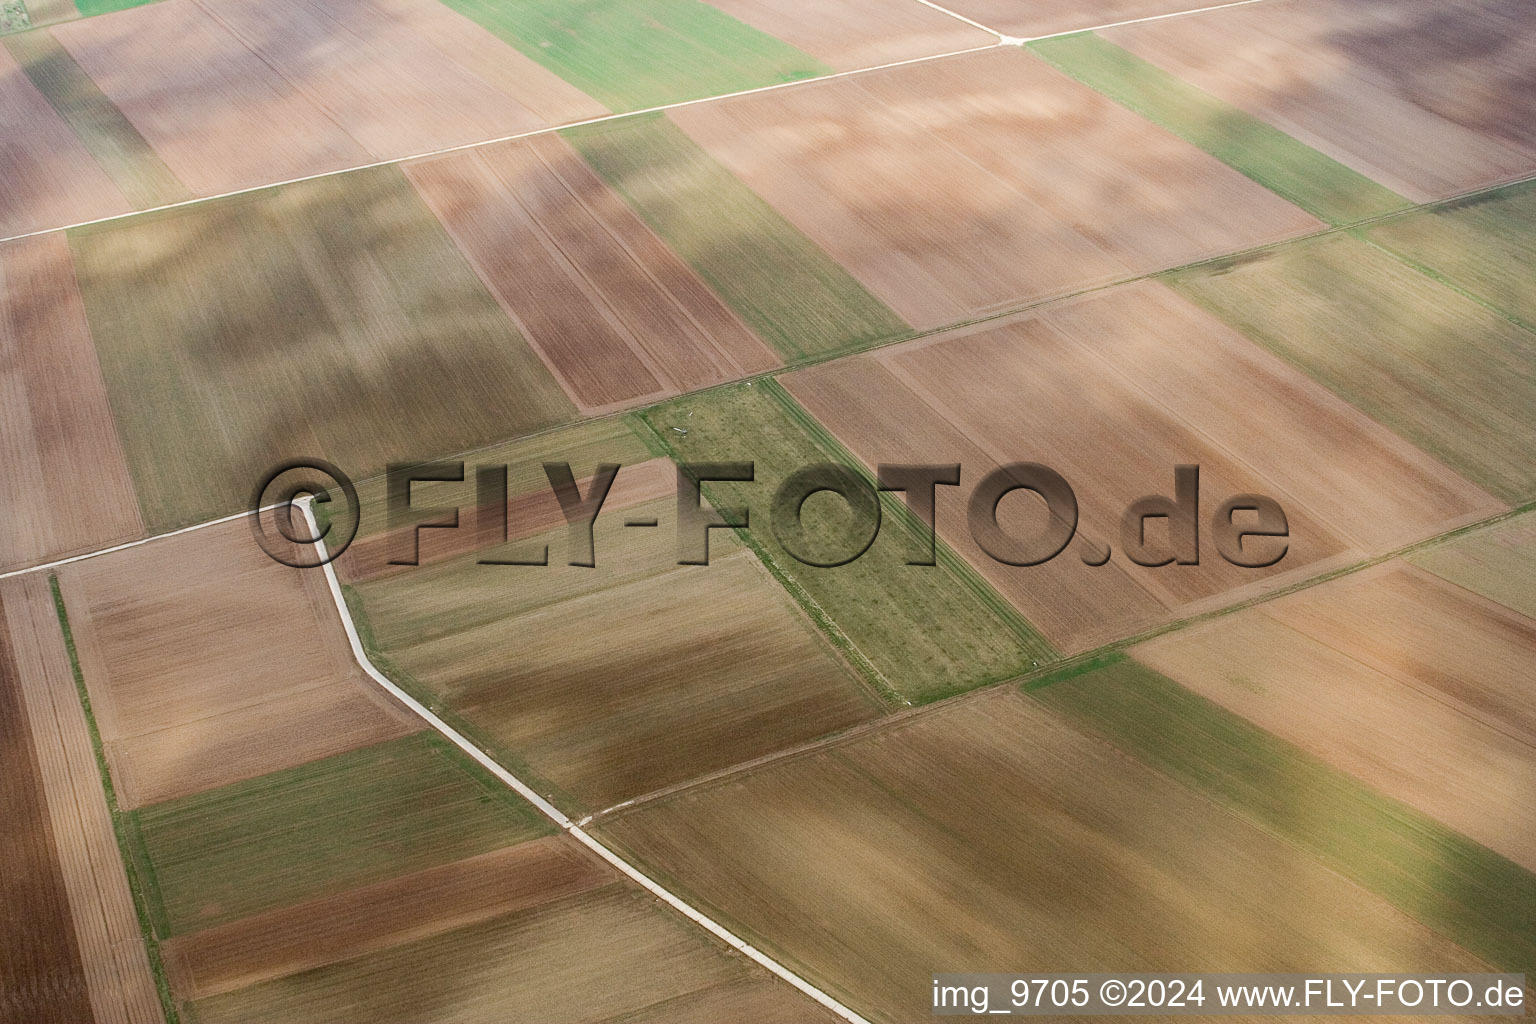 Vue aérienne de NixWieNuff à Offenbach an der Queich dans le département Rhénanie-Palatinat, Allemagne